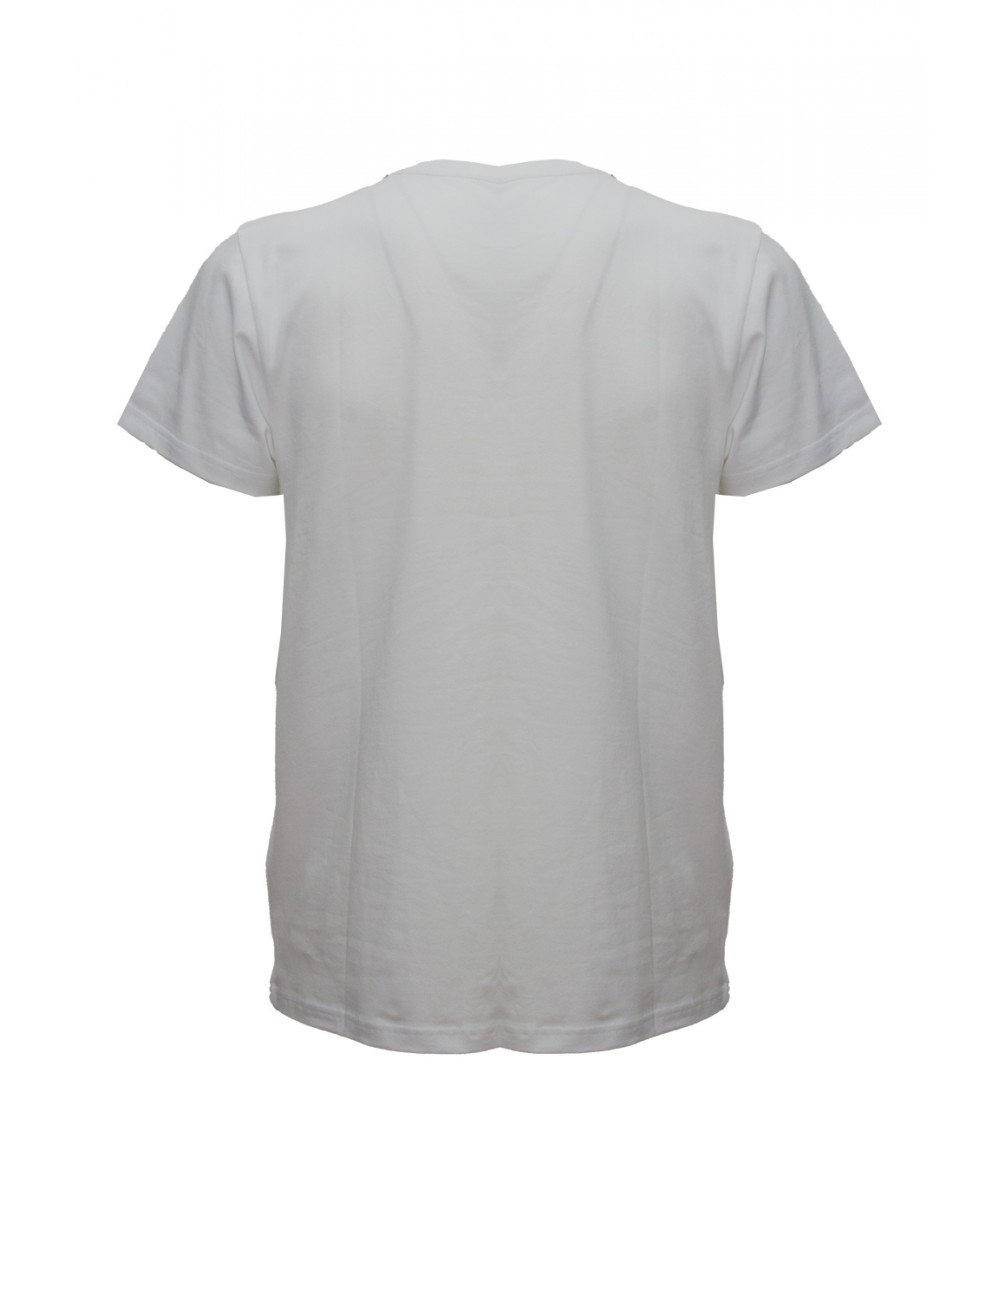 t-shirt moschino UOMO BIANCA 0001 - V3A0703 - 9408 vista frontale